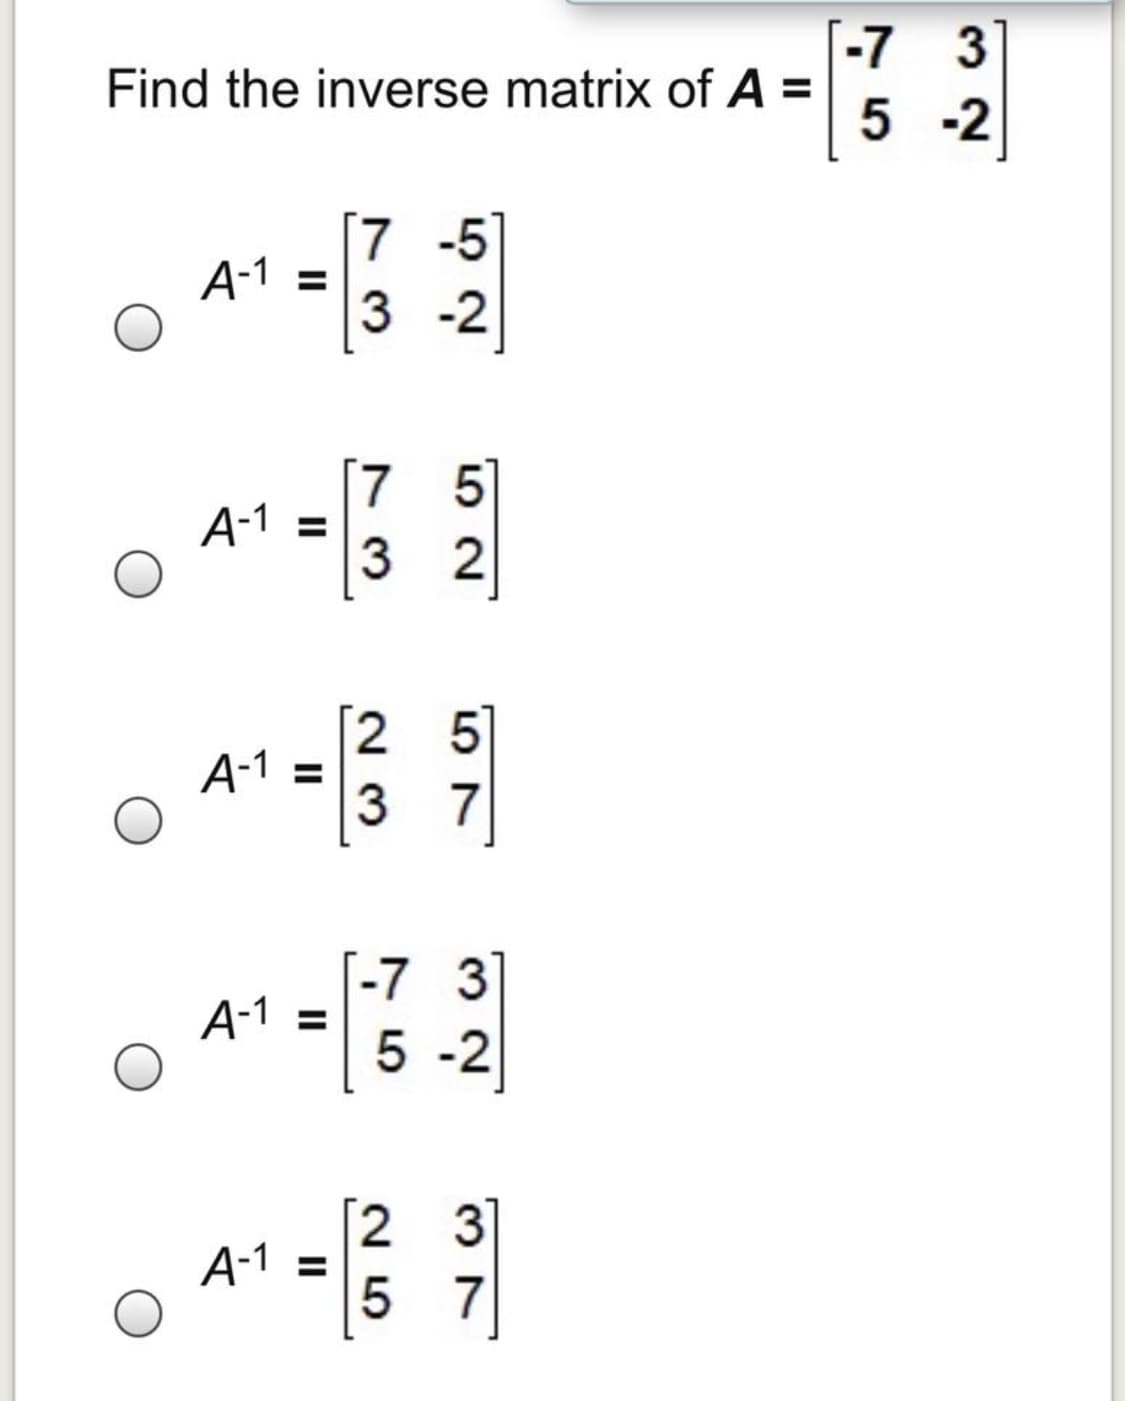 -7 3
Find the inverse matrix of A =
5 -2
[7 -5
A-1 =
3 -2
[7 5]
A-1 =
3 2
[2 5]
A-1
3 7
[-7 3
А-1 %3
5 -2
3
A-1 =
5 7
II
